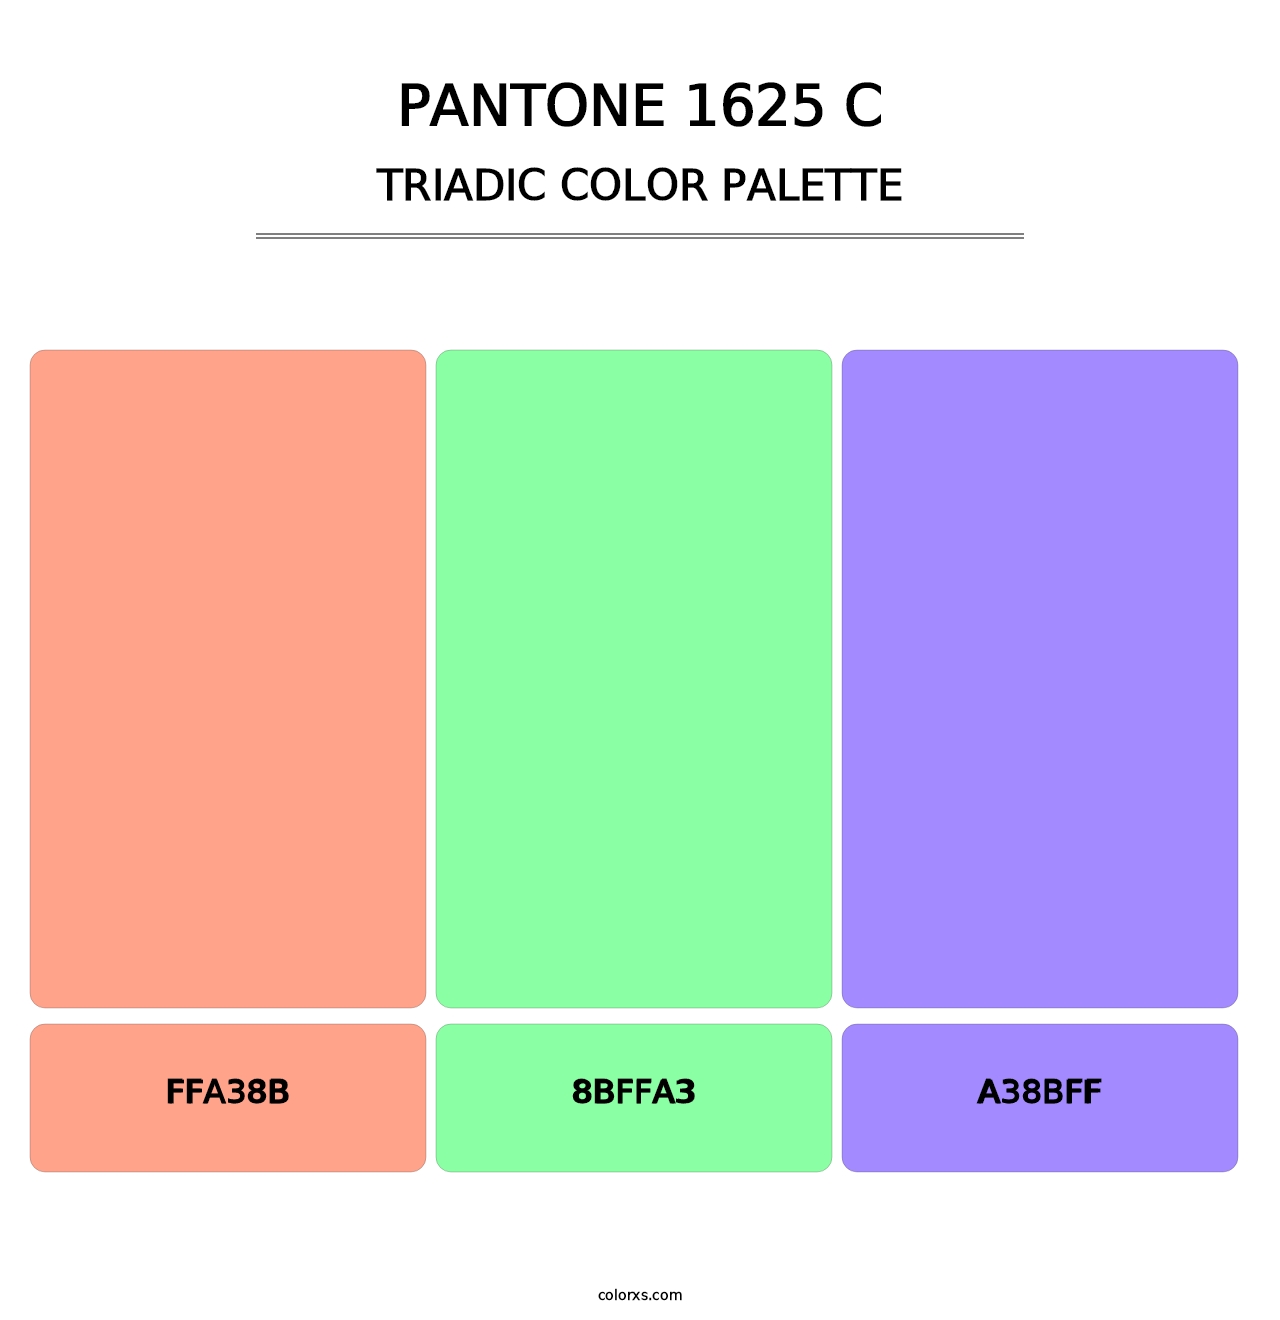 PANTONE 1625 C - Triadic Color Palette